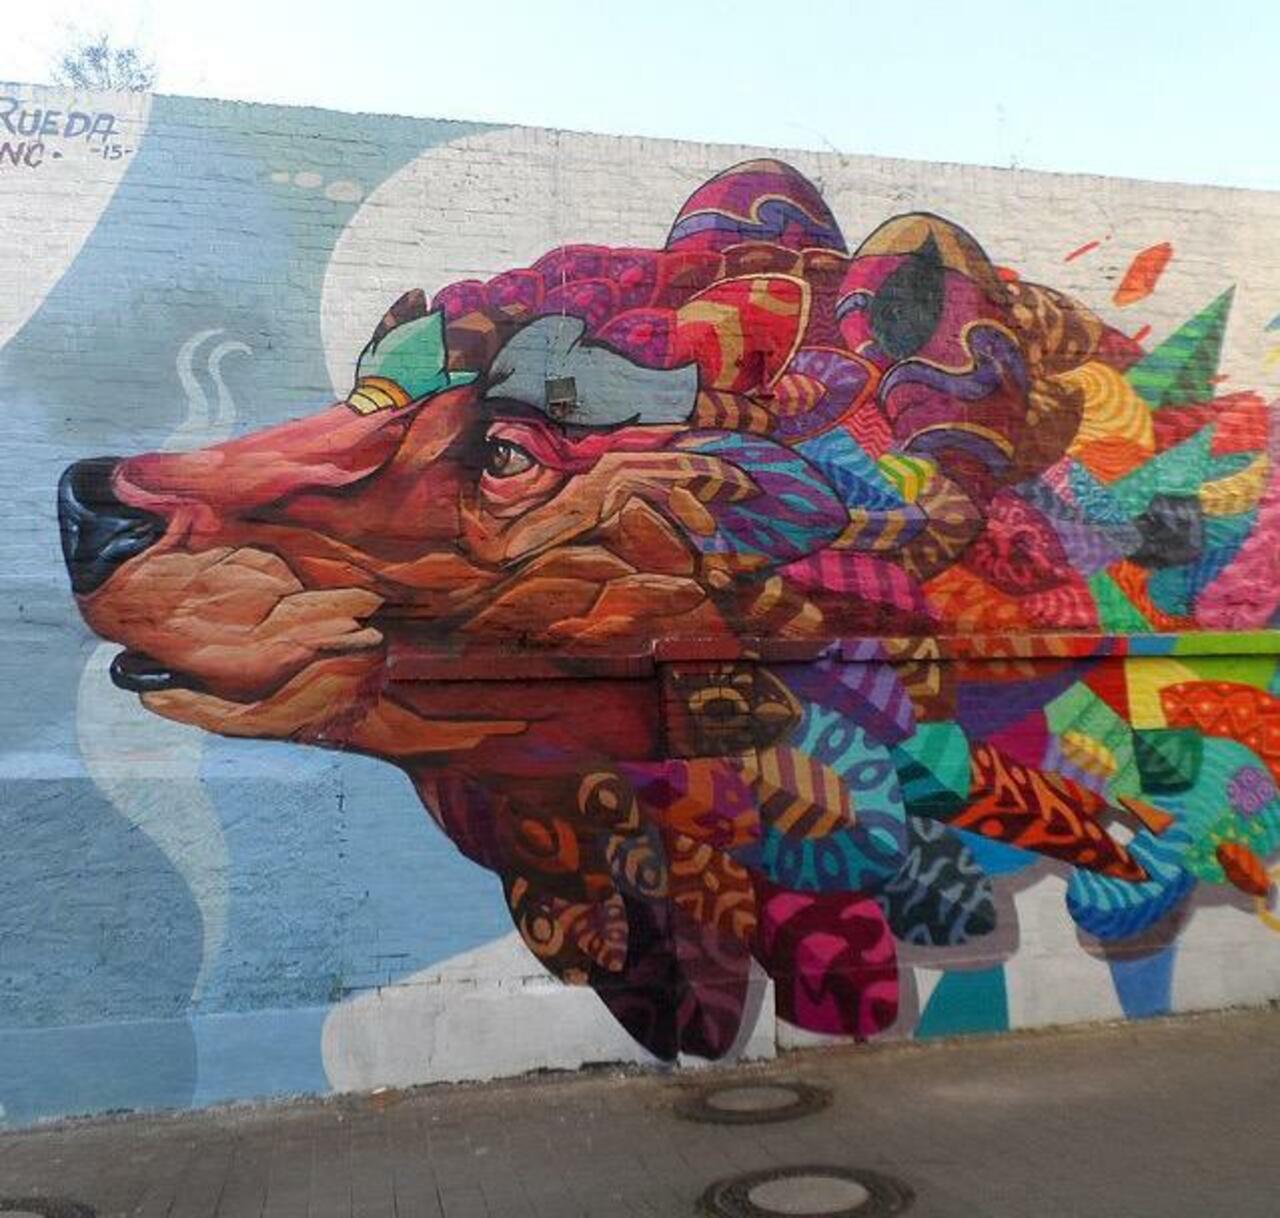 Farid Rueda Street Art 

#art #graffiti #mural #streetart http://t.co/1NgvUUmvNz